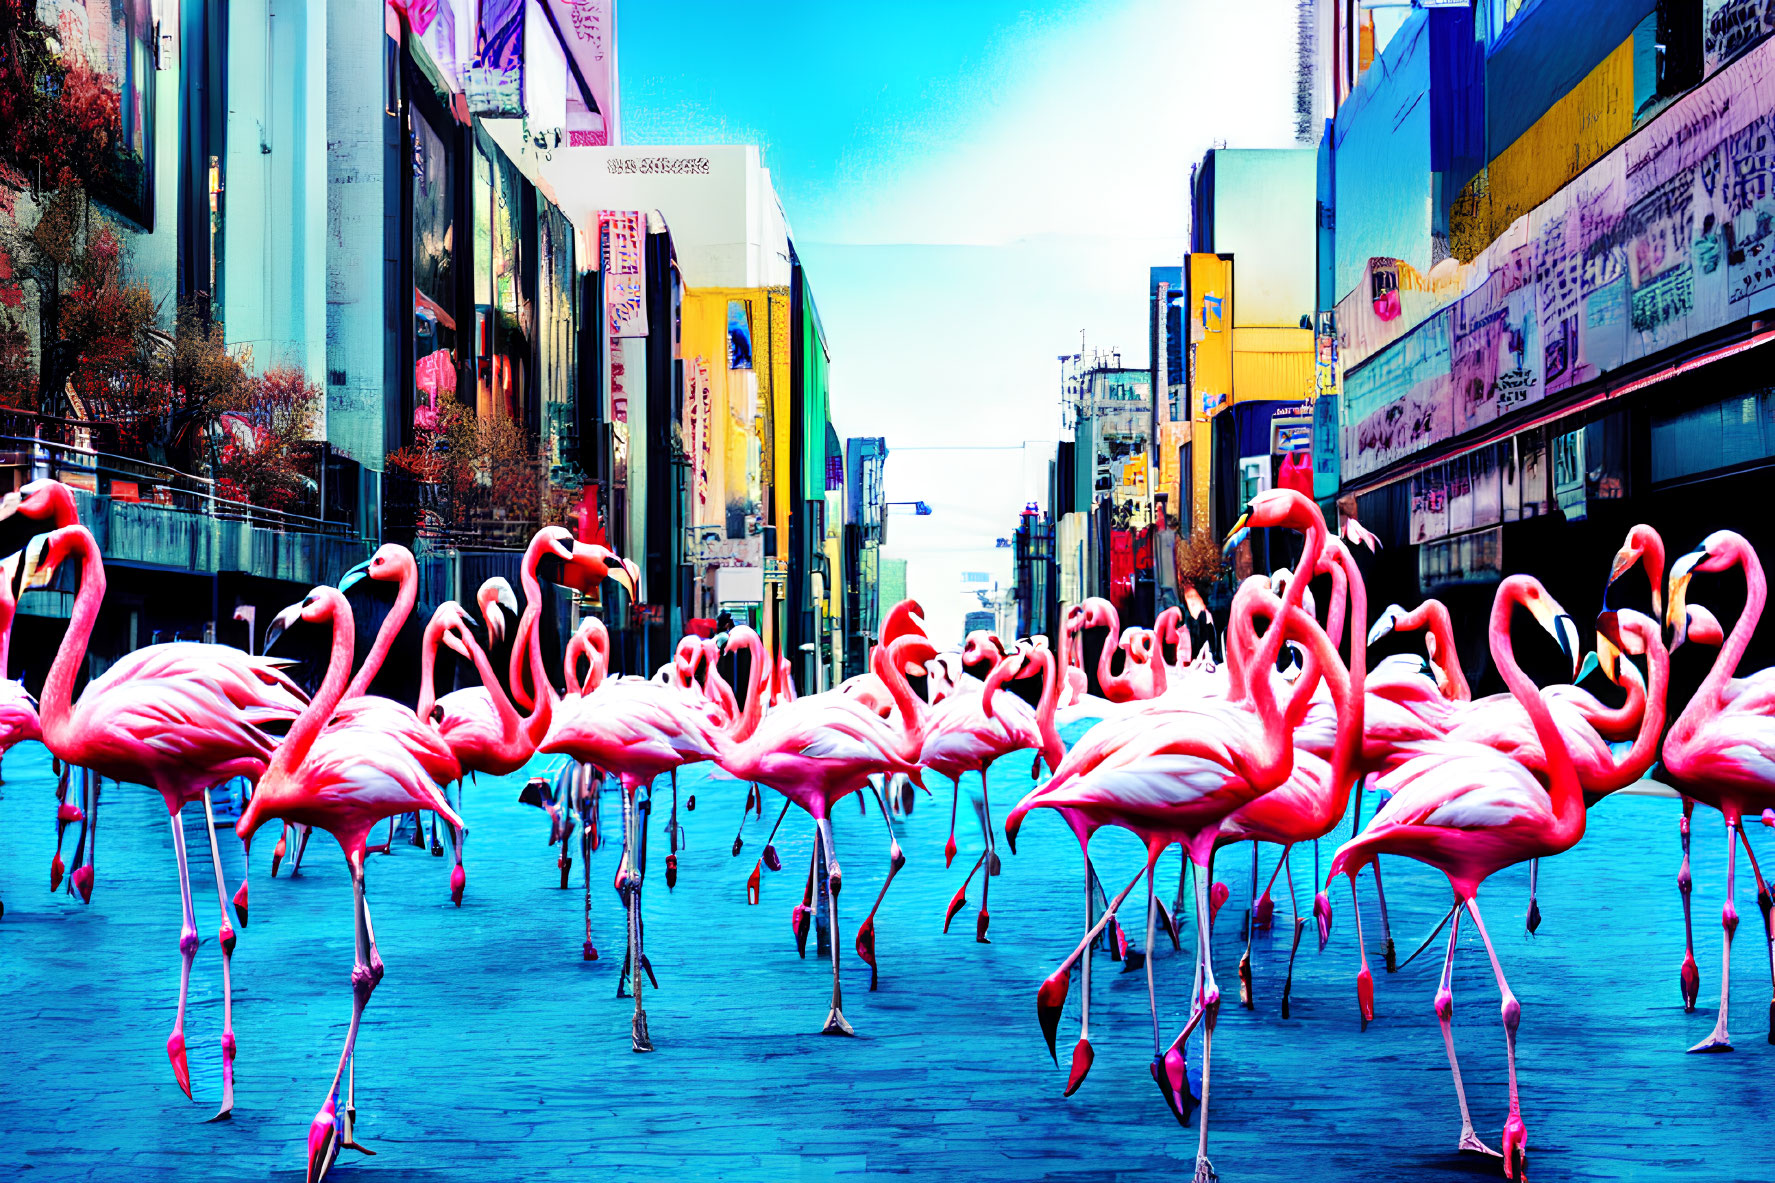 Colorful digital art: Pink flamingos in urban street scene